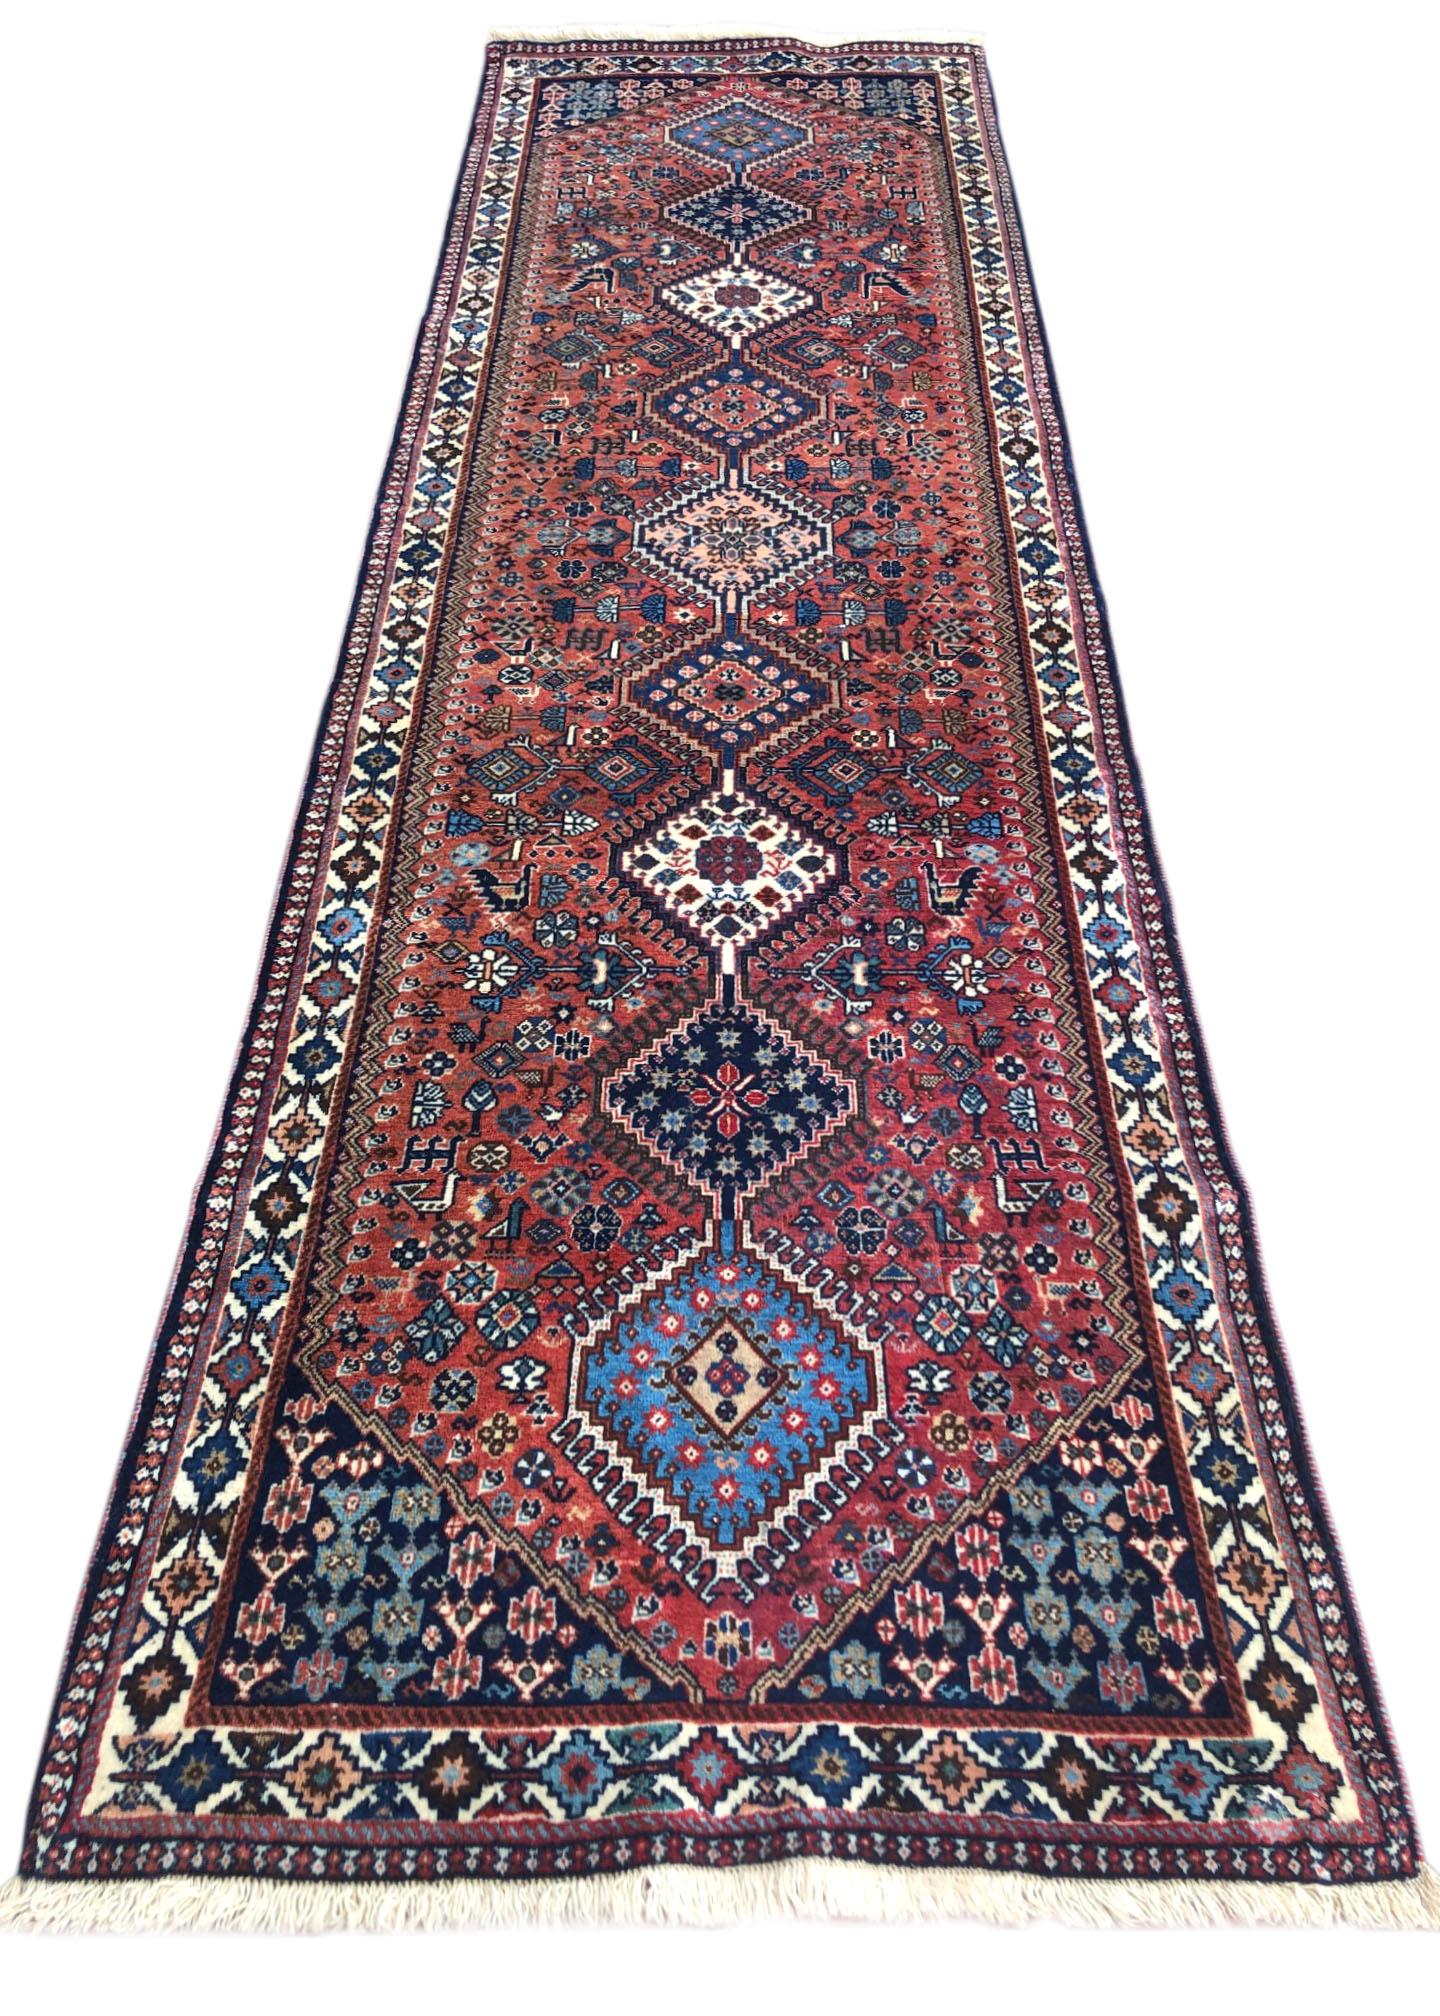 Ce tapis de course est tissé à la main à Yalameh, une ville située au nord de la ville d'Ispahan. Yalameh est réputé pour ses tapis tribaux de qualité supérieure aux motifs géométriques. Les poils utilisés dans ce patin sont en laine sur une base de